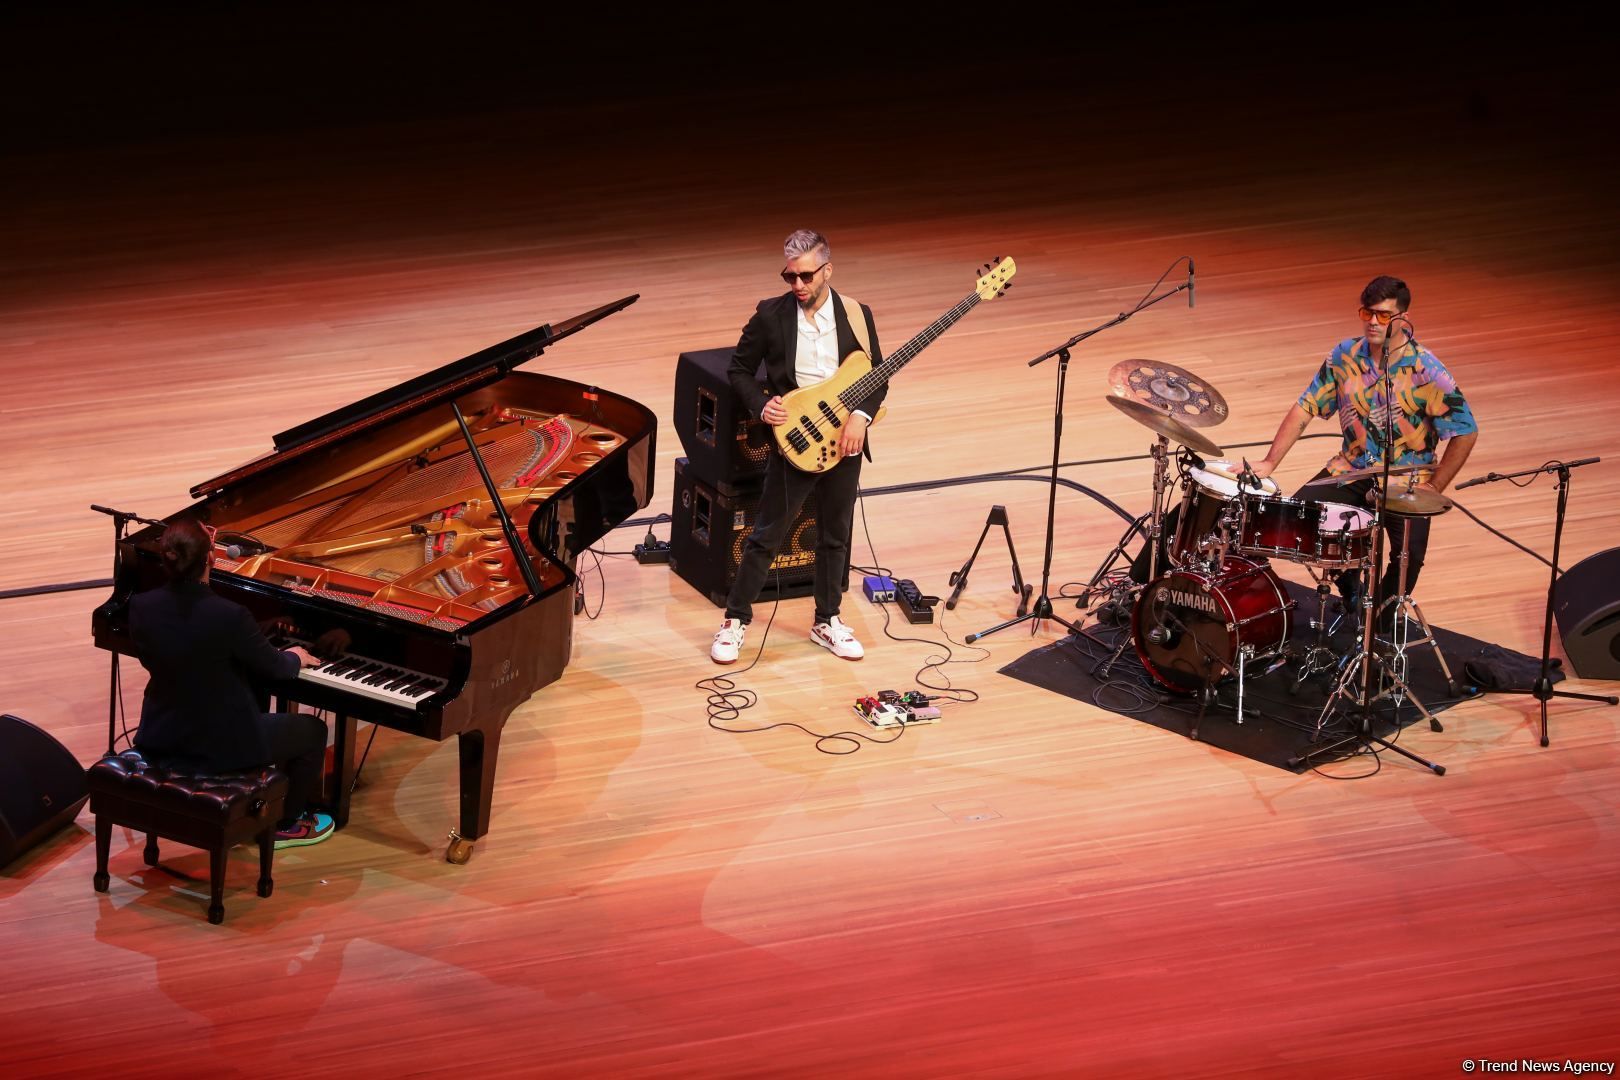 Cuban jazzman shines at Baku Summer Jazz Days [PHOTOS/VIDEO]